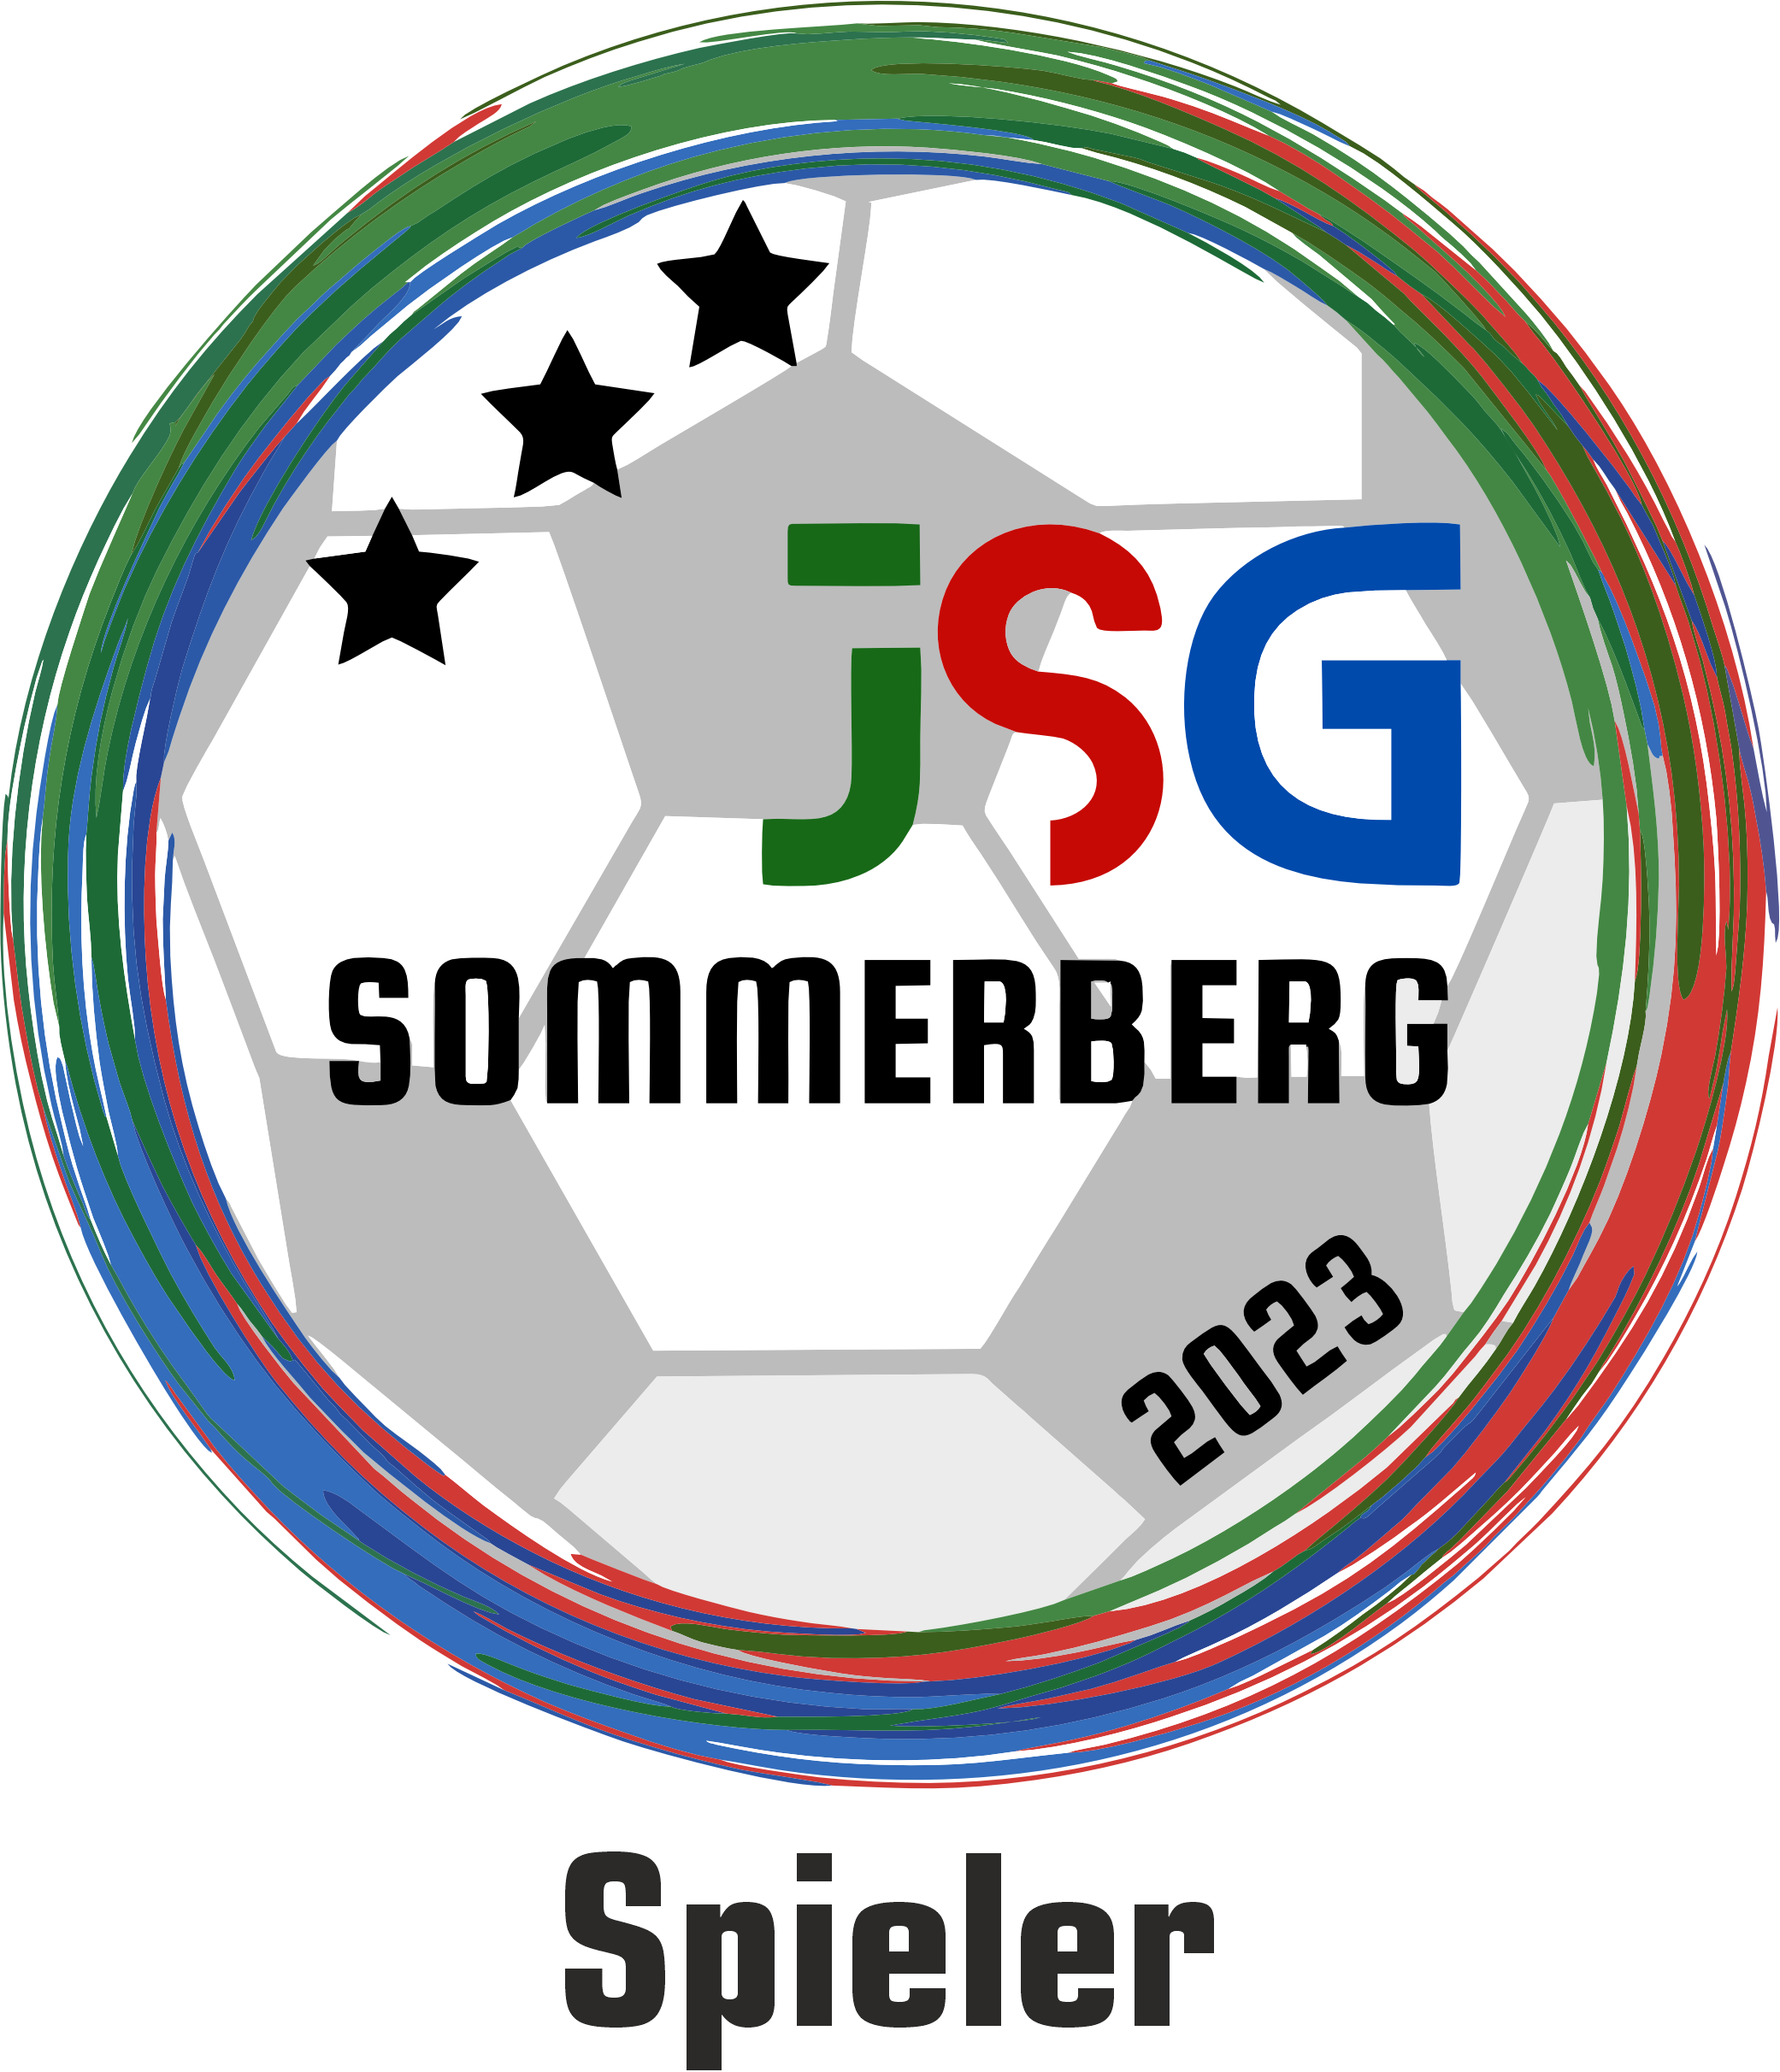 JSG Sommerberg Spieler Logo